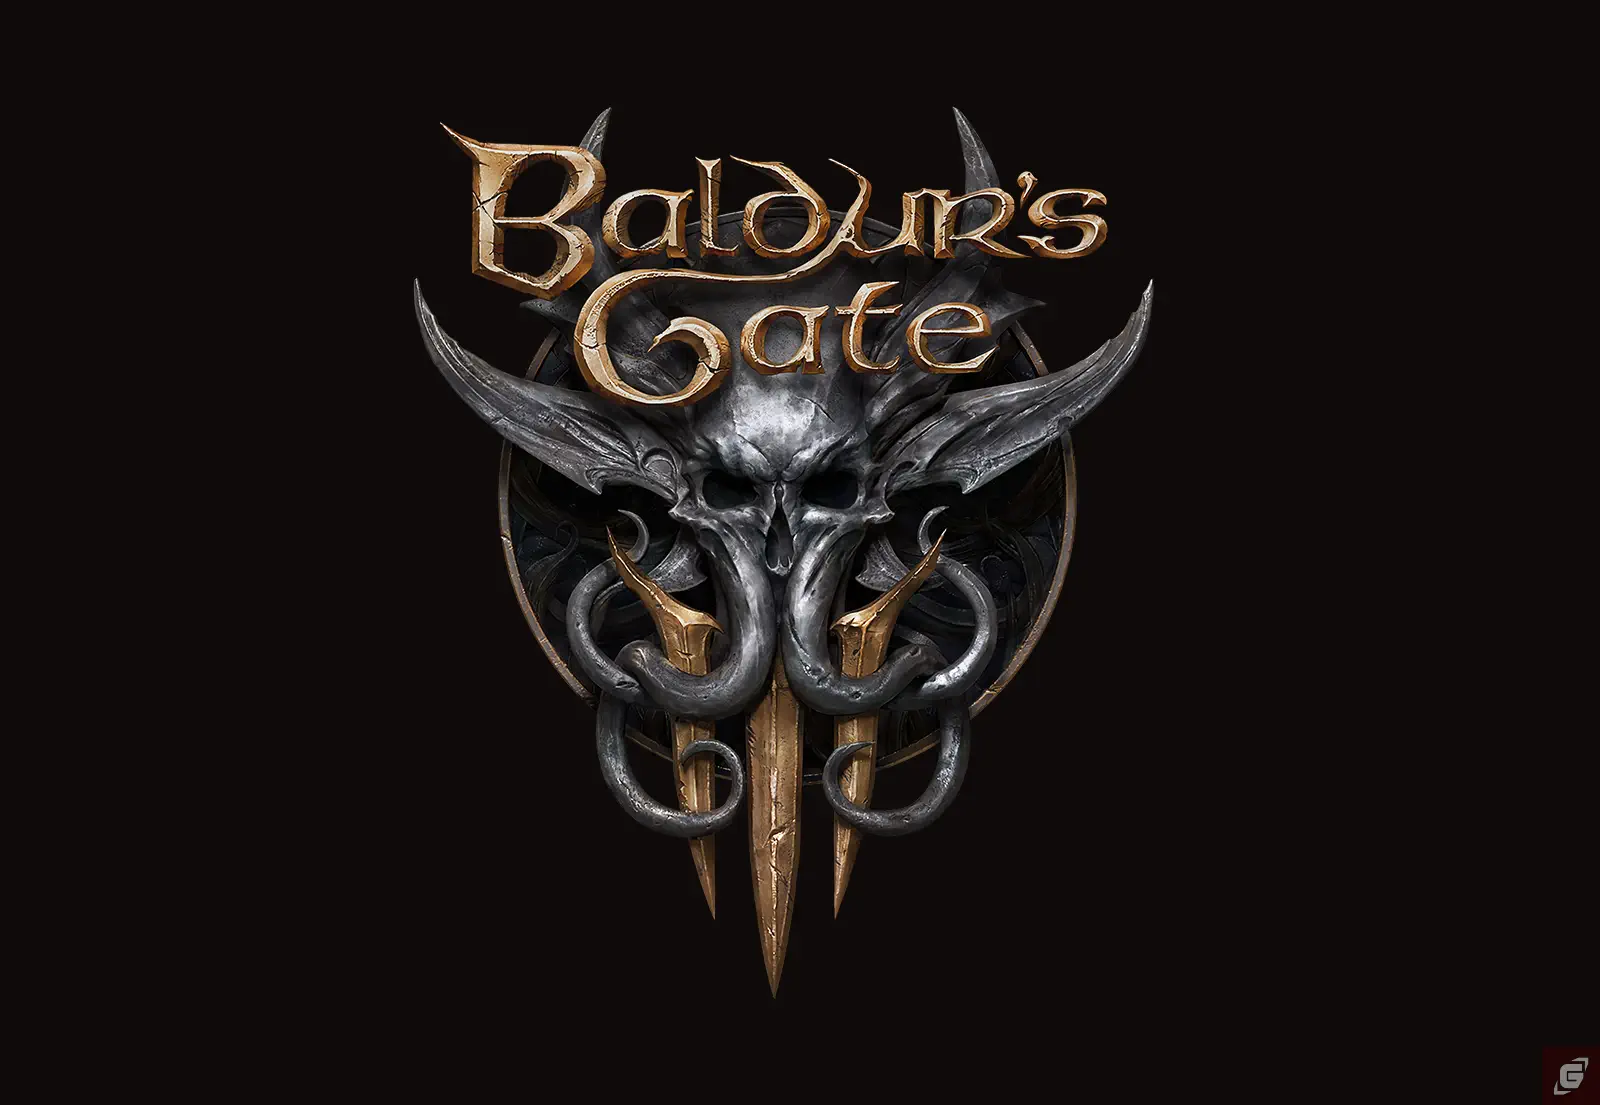 Early Access Starttermin von Baldurs Gate 3 bekannt gegeben!